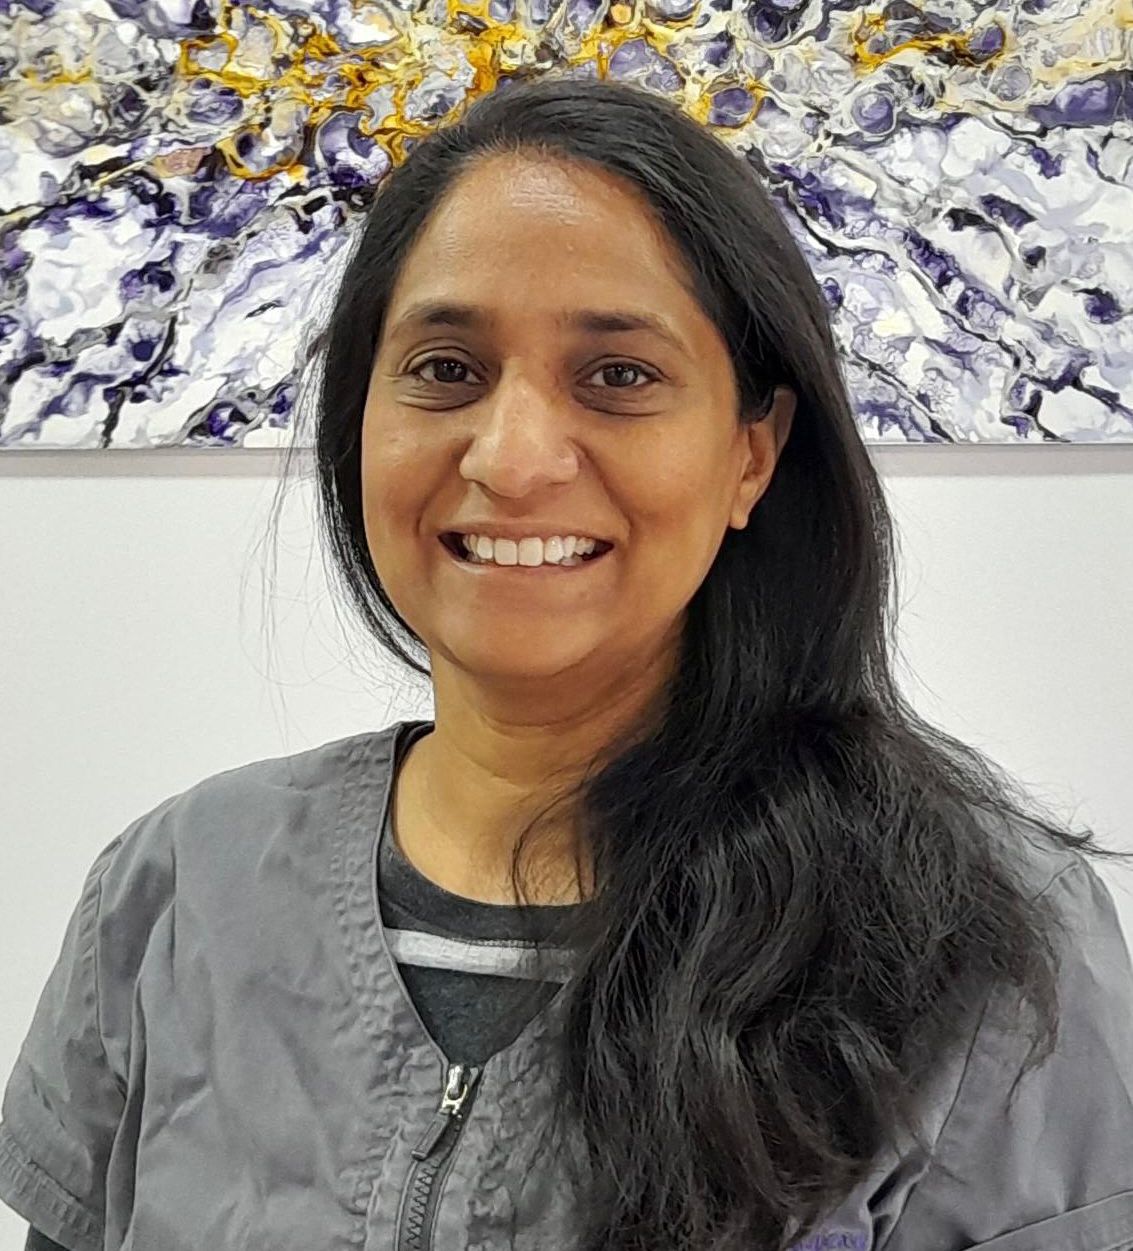 Dr Anisha Patel